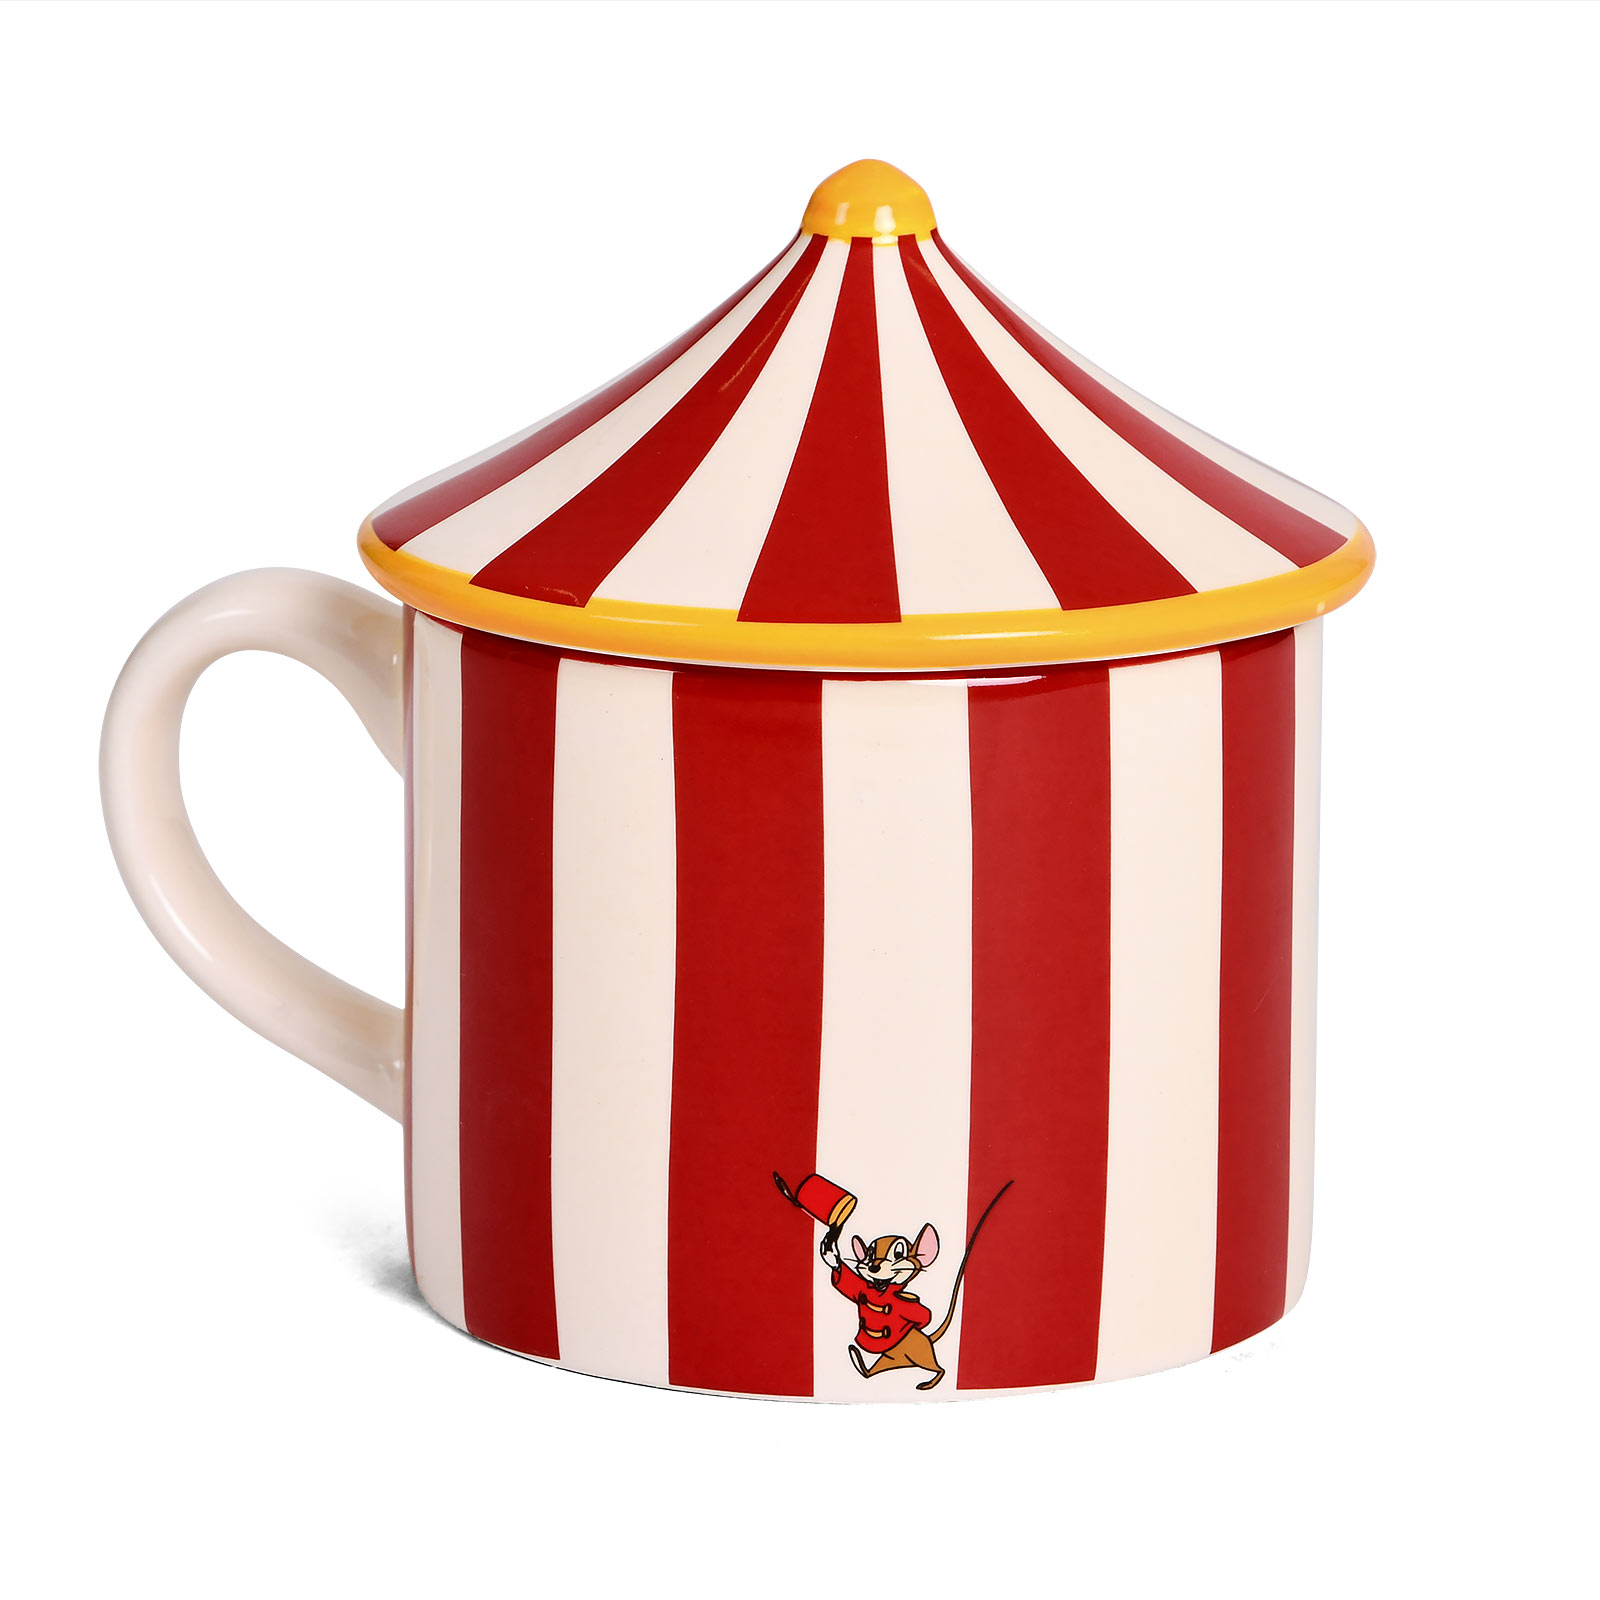 Dumbo - Tasse 3D Tente de Cirque avec Couvercle